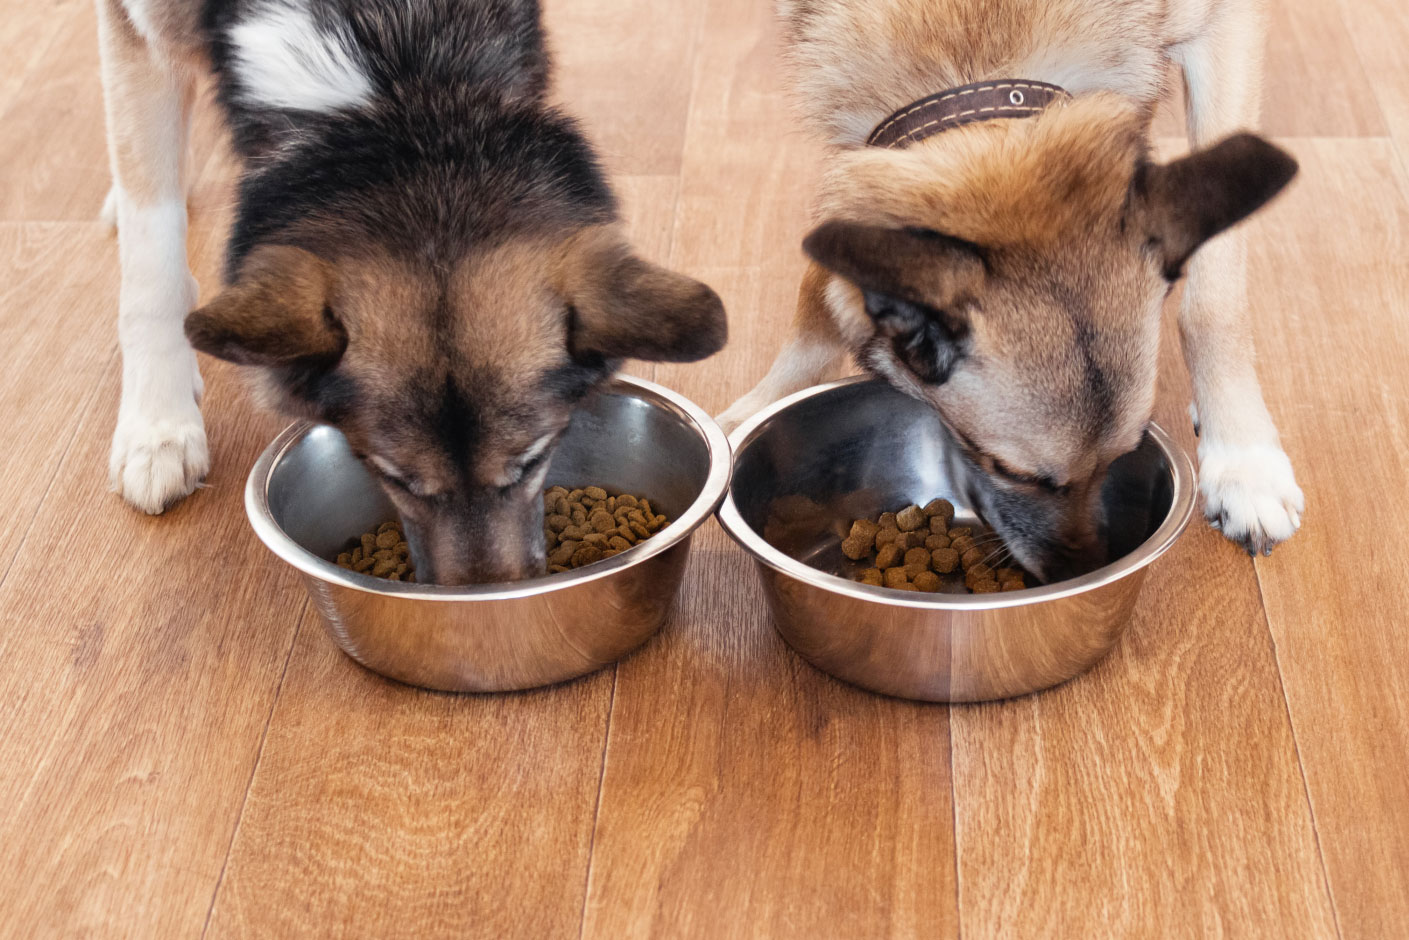 Zwei Hunde fressen aus zwei verschiedenen Näpfen.